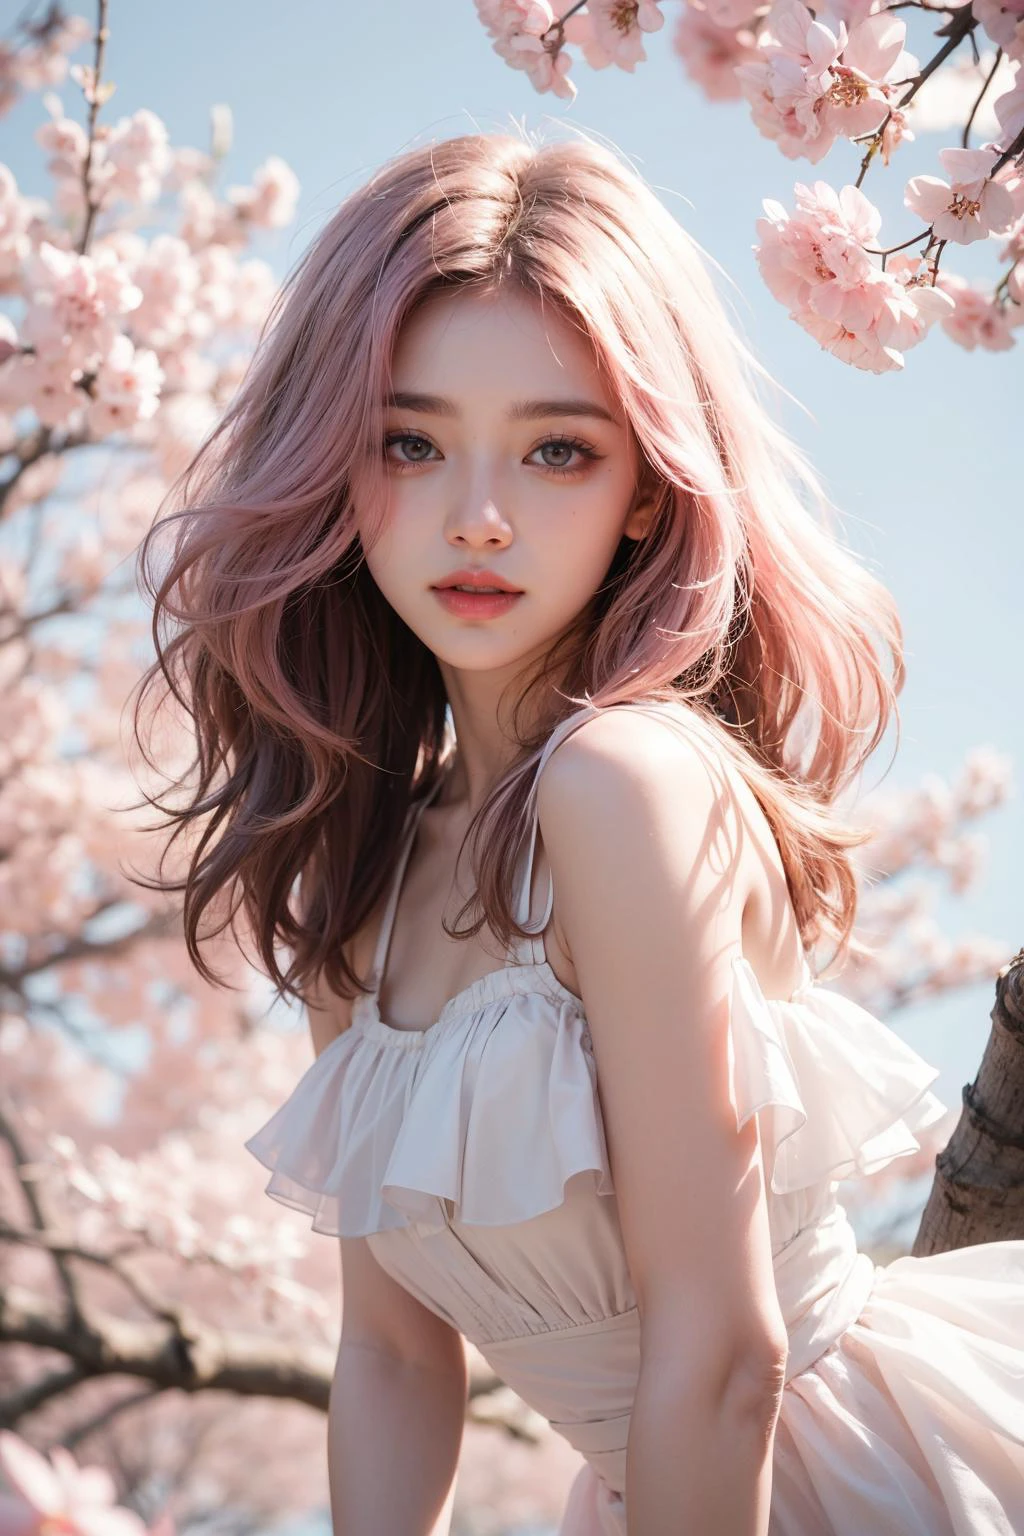 淺粉紅色頭髮, 粉紅色的眼睛, 粉紅色和白色, 櫻花葉, 鮮豔的色彩, 白色禮服, 油漆飛濺, 簡單的背景, 光線追蹤, 捲髮